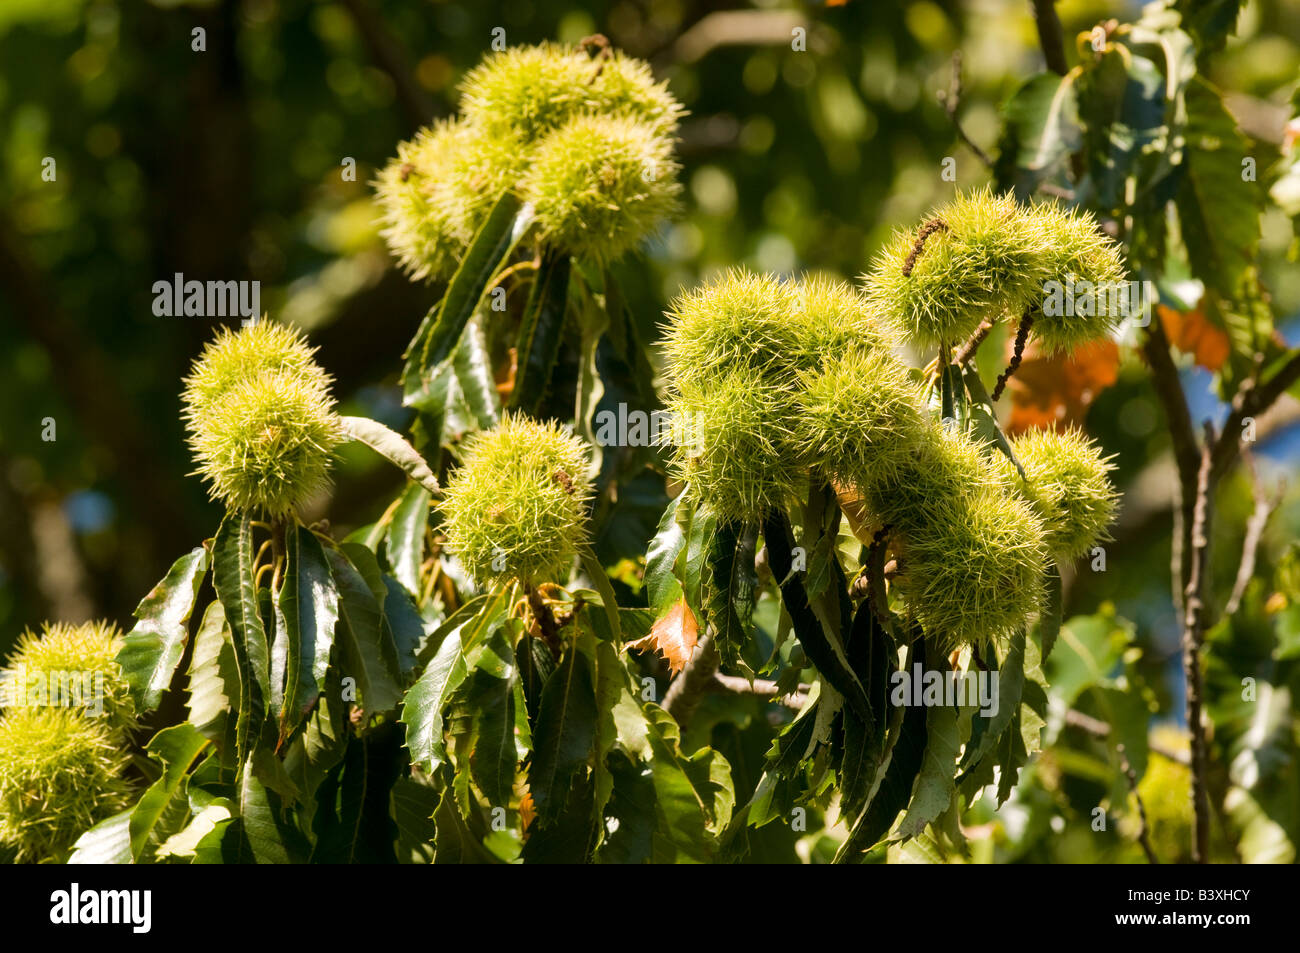 Spanische Kastanie Baum Früchte - Castanea Sativa - Indre et Loire, Frankreich. Stockfoto